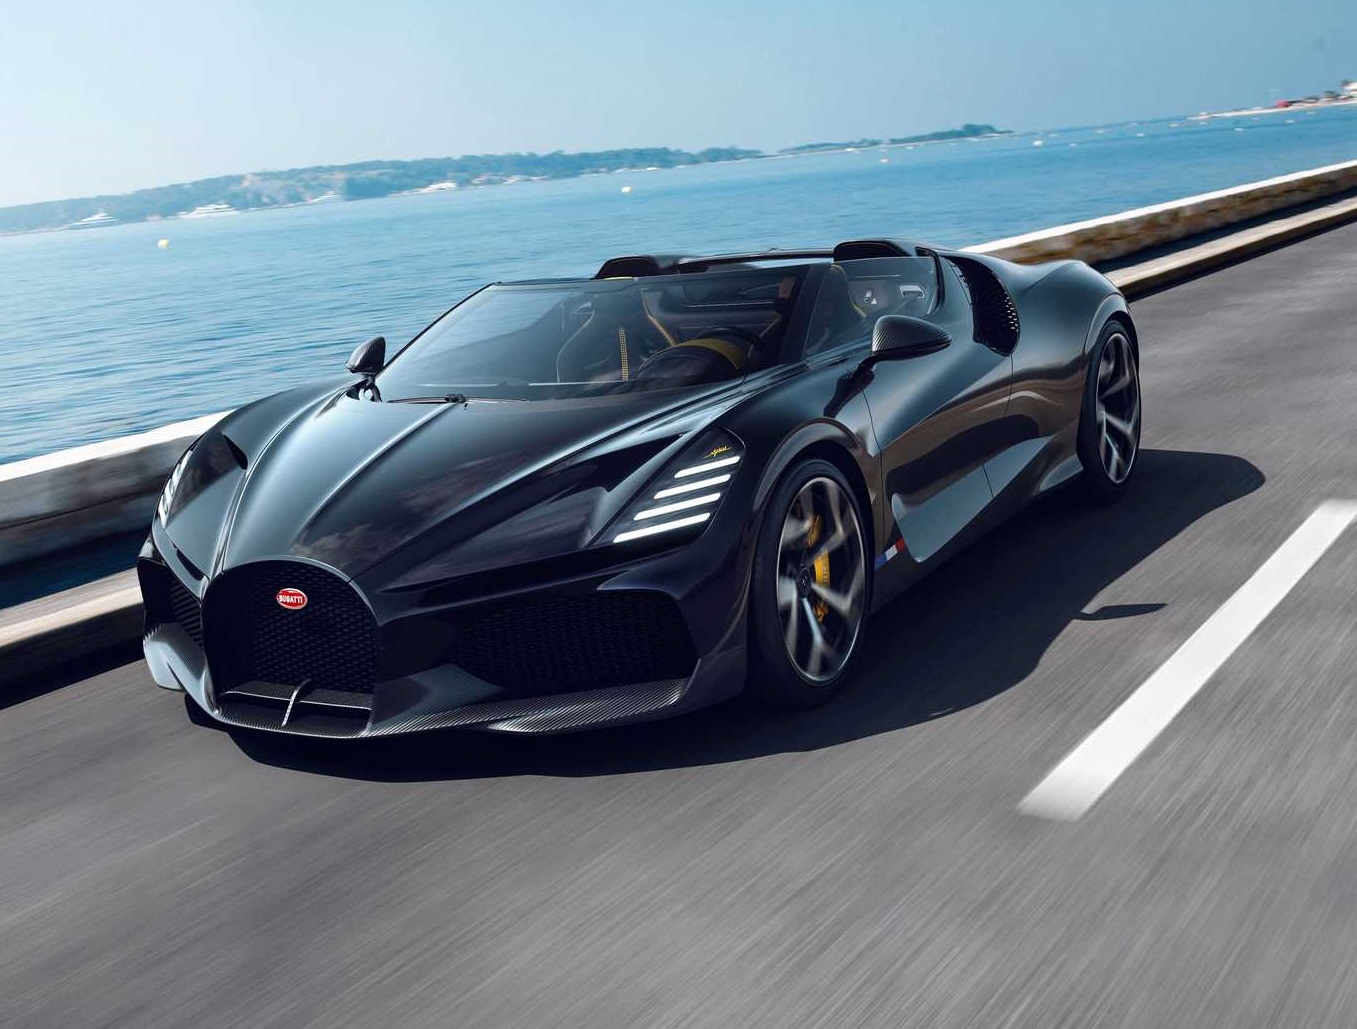 Novos Bugatti serão os mais potentes da história